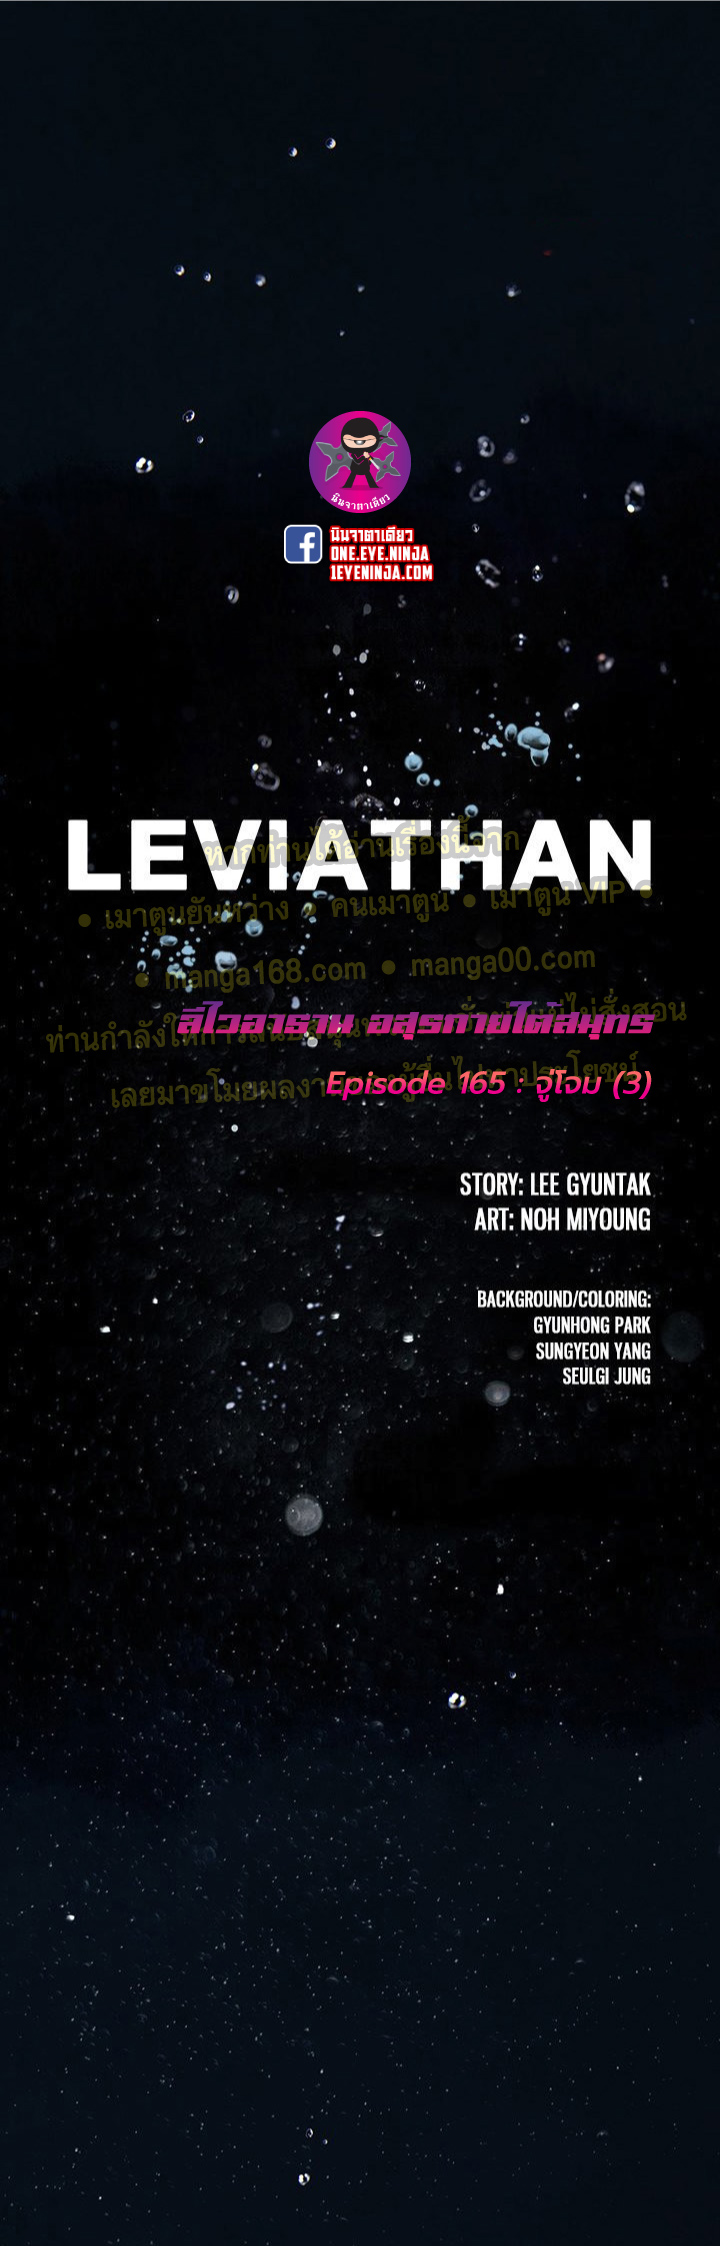 Leviathan165 01